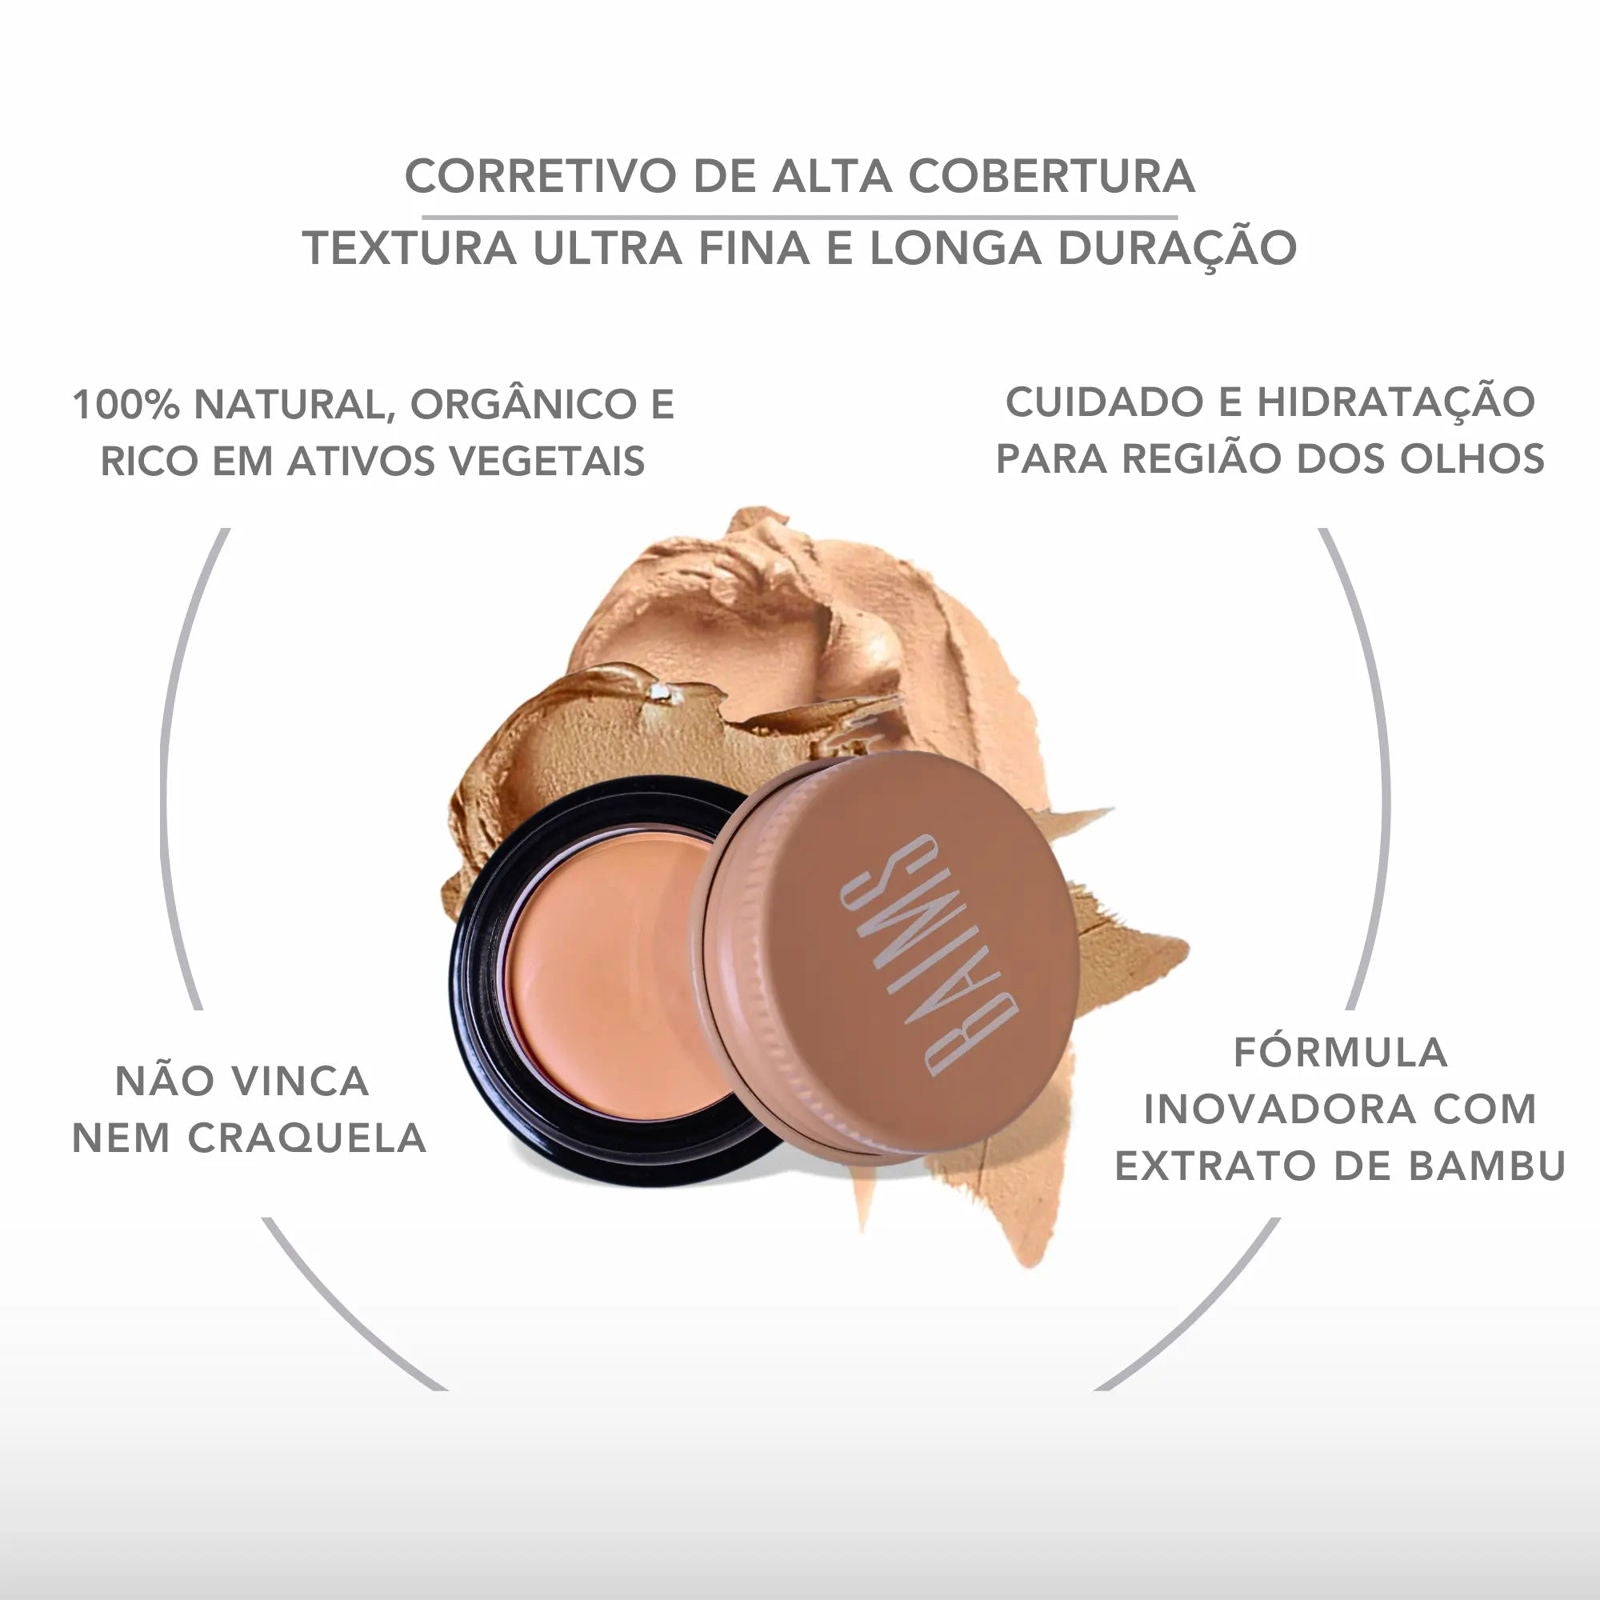 Corretivo Alta Cobertura - BAIMS Natural Makeup